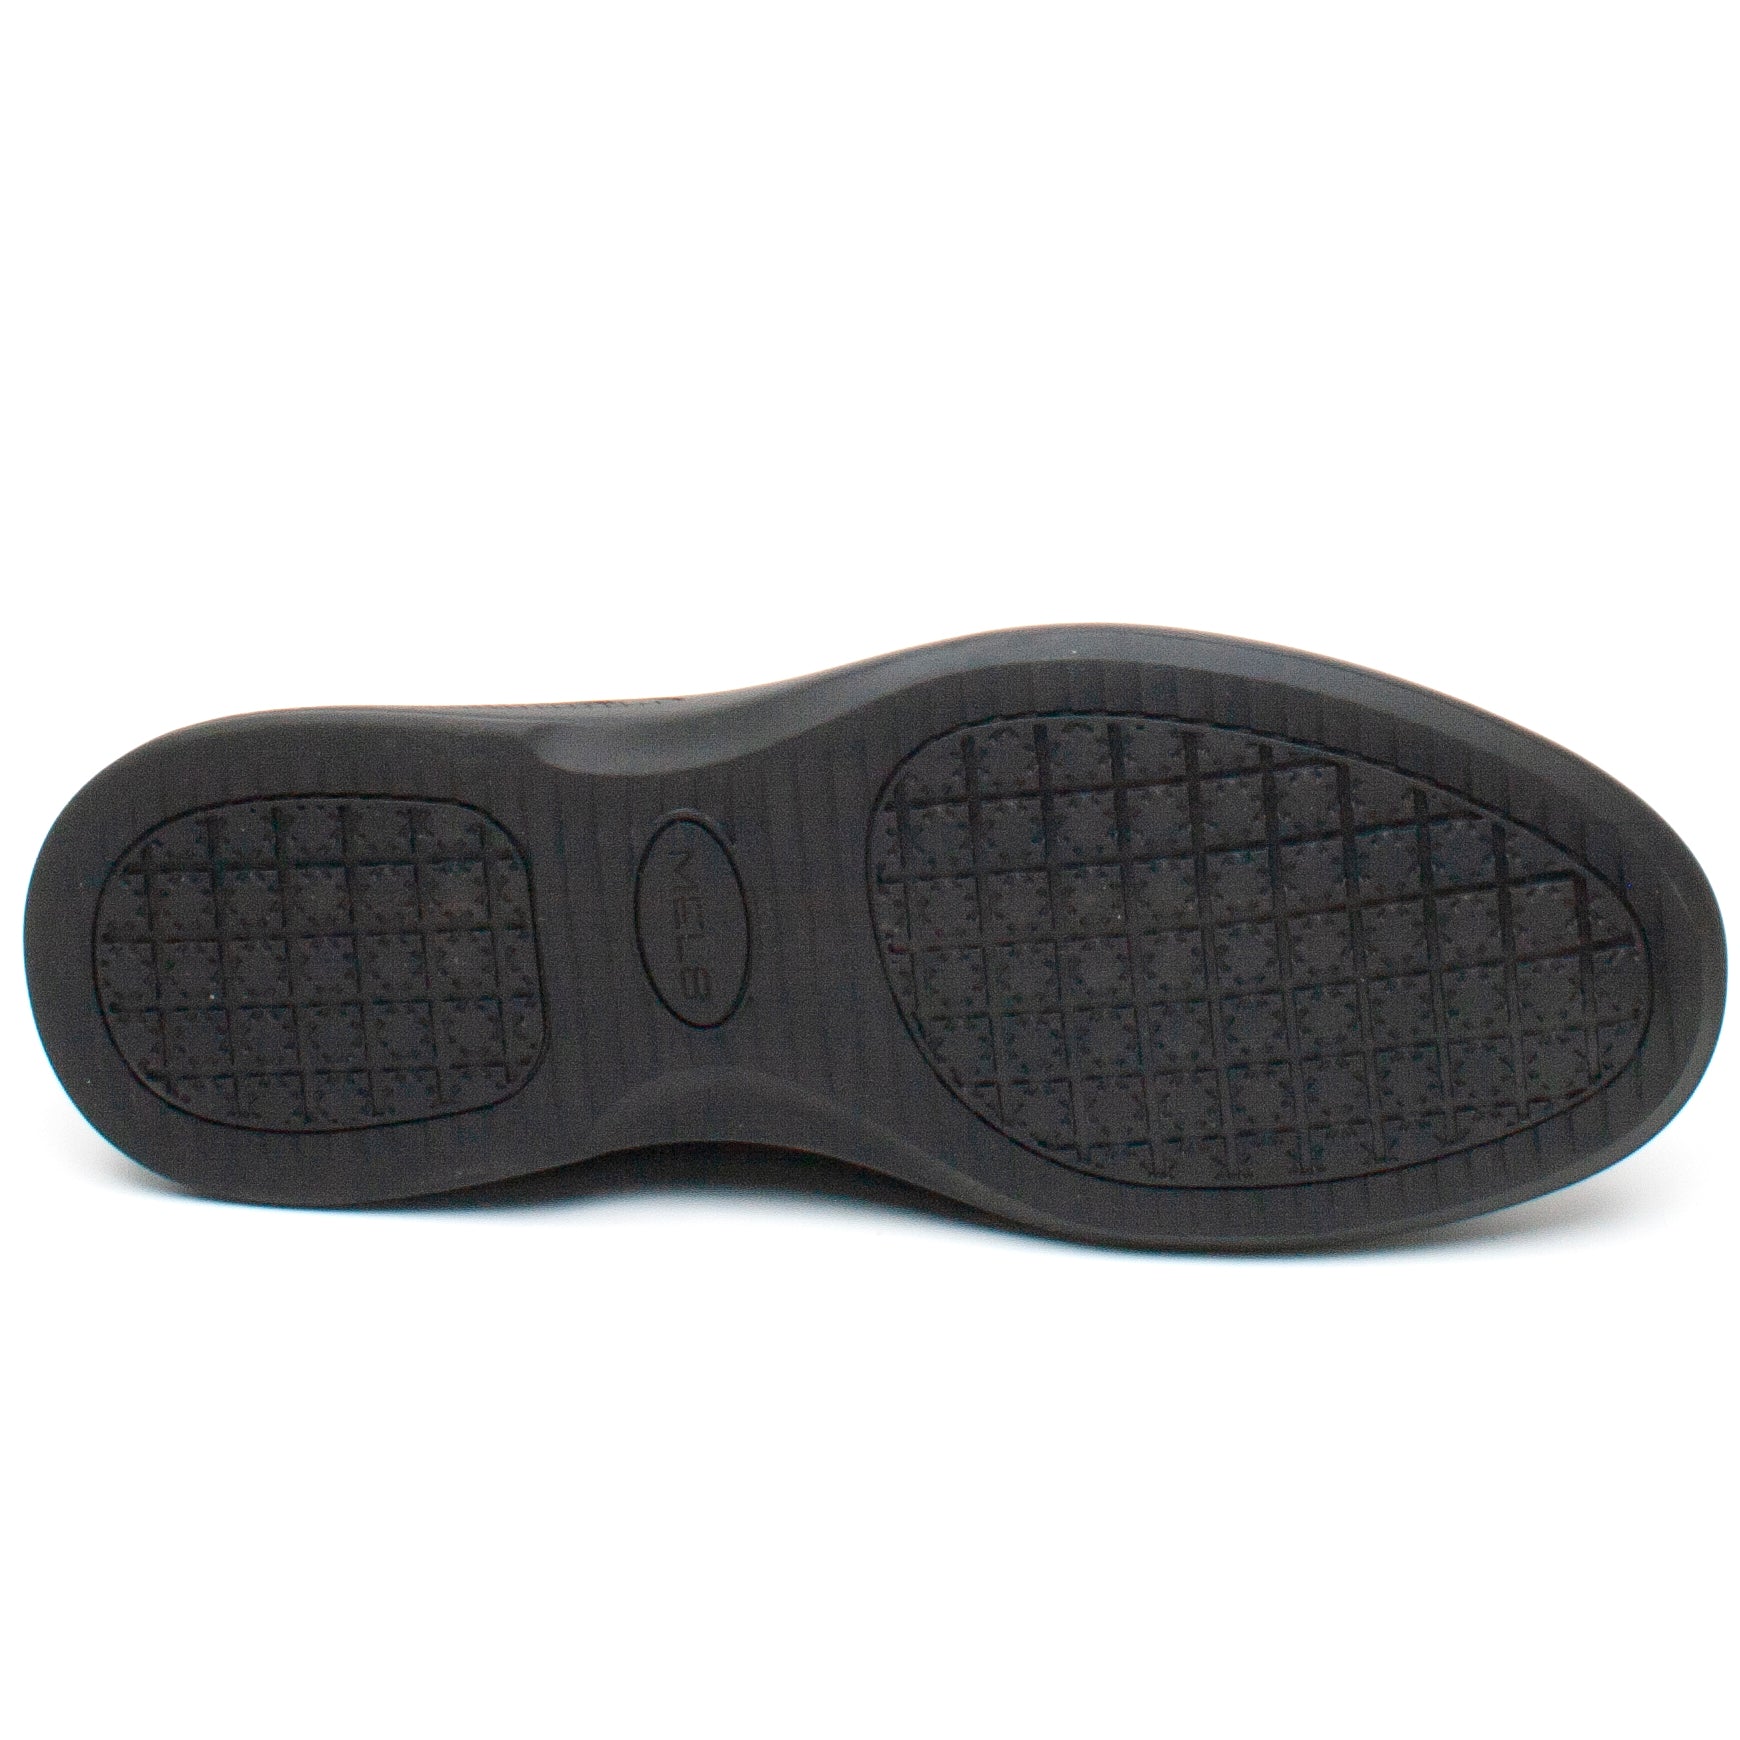 Mels Pantofi barbati W2301 negru IB2285-NG